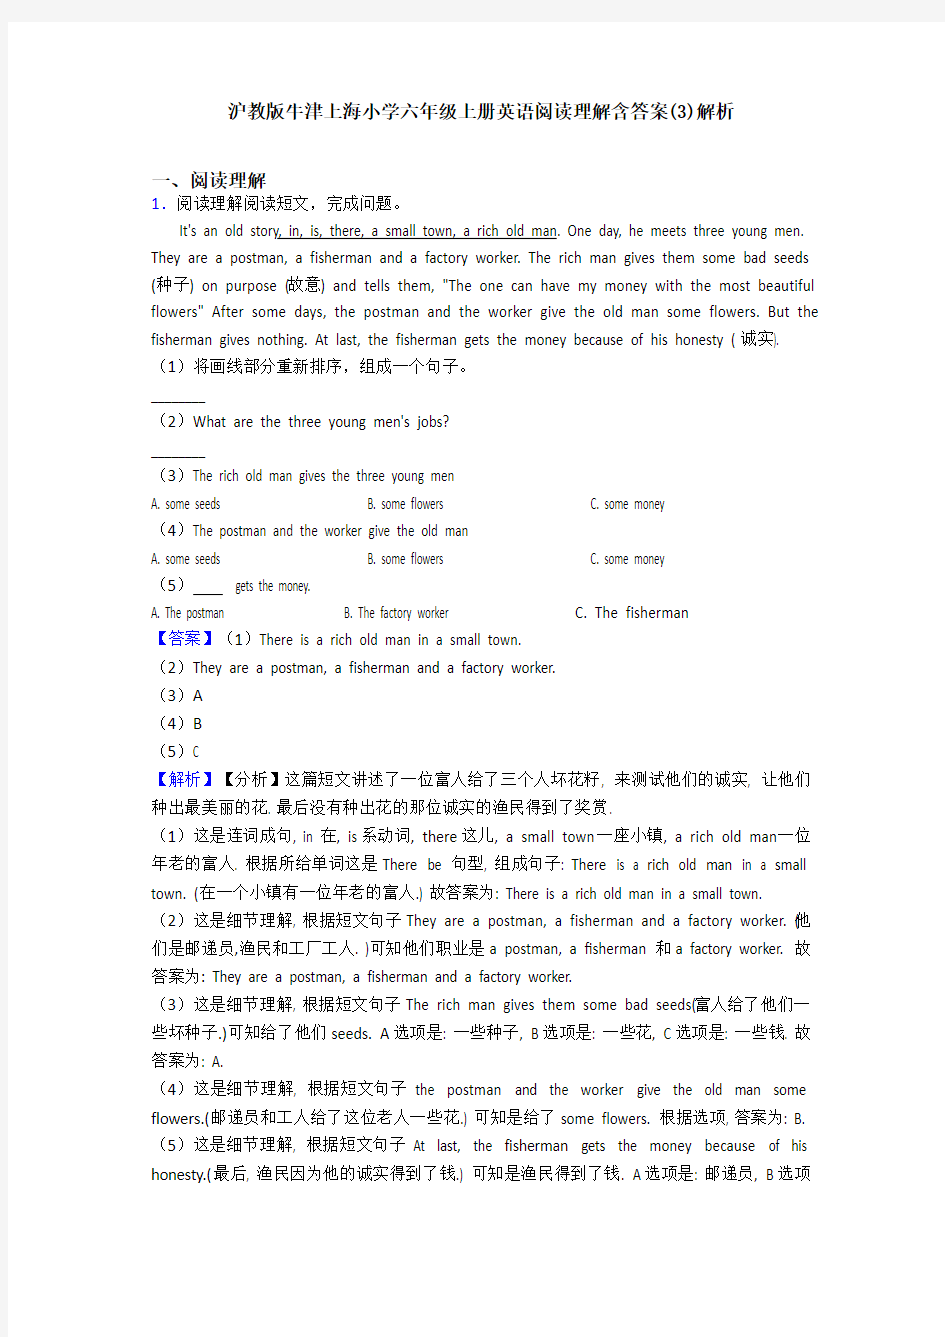 沪教版牛津上海小学六年级上册英语阅读理解含答案(3)解析